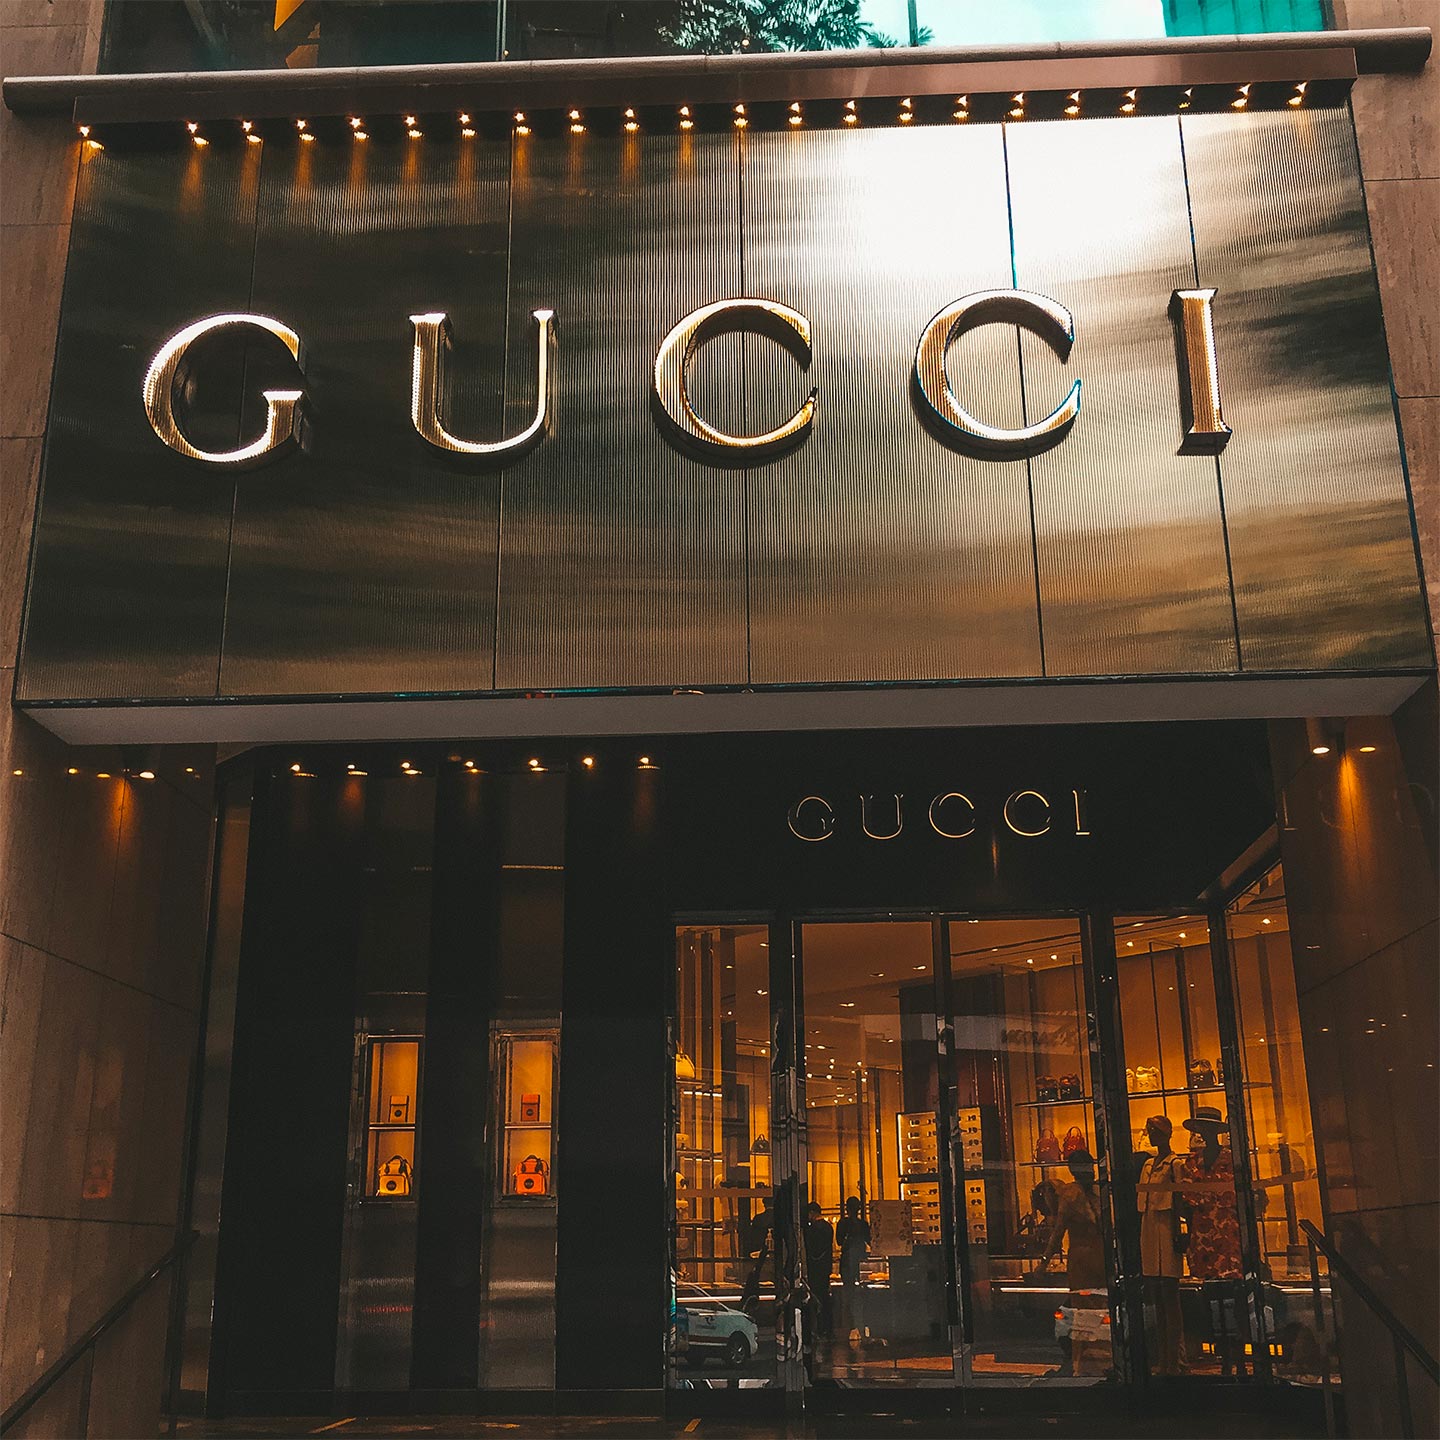 A Gucci store